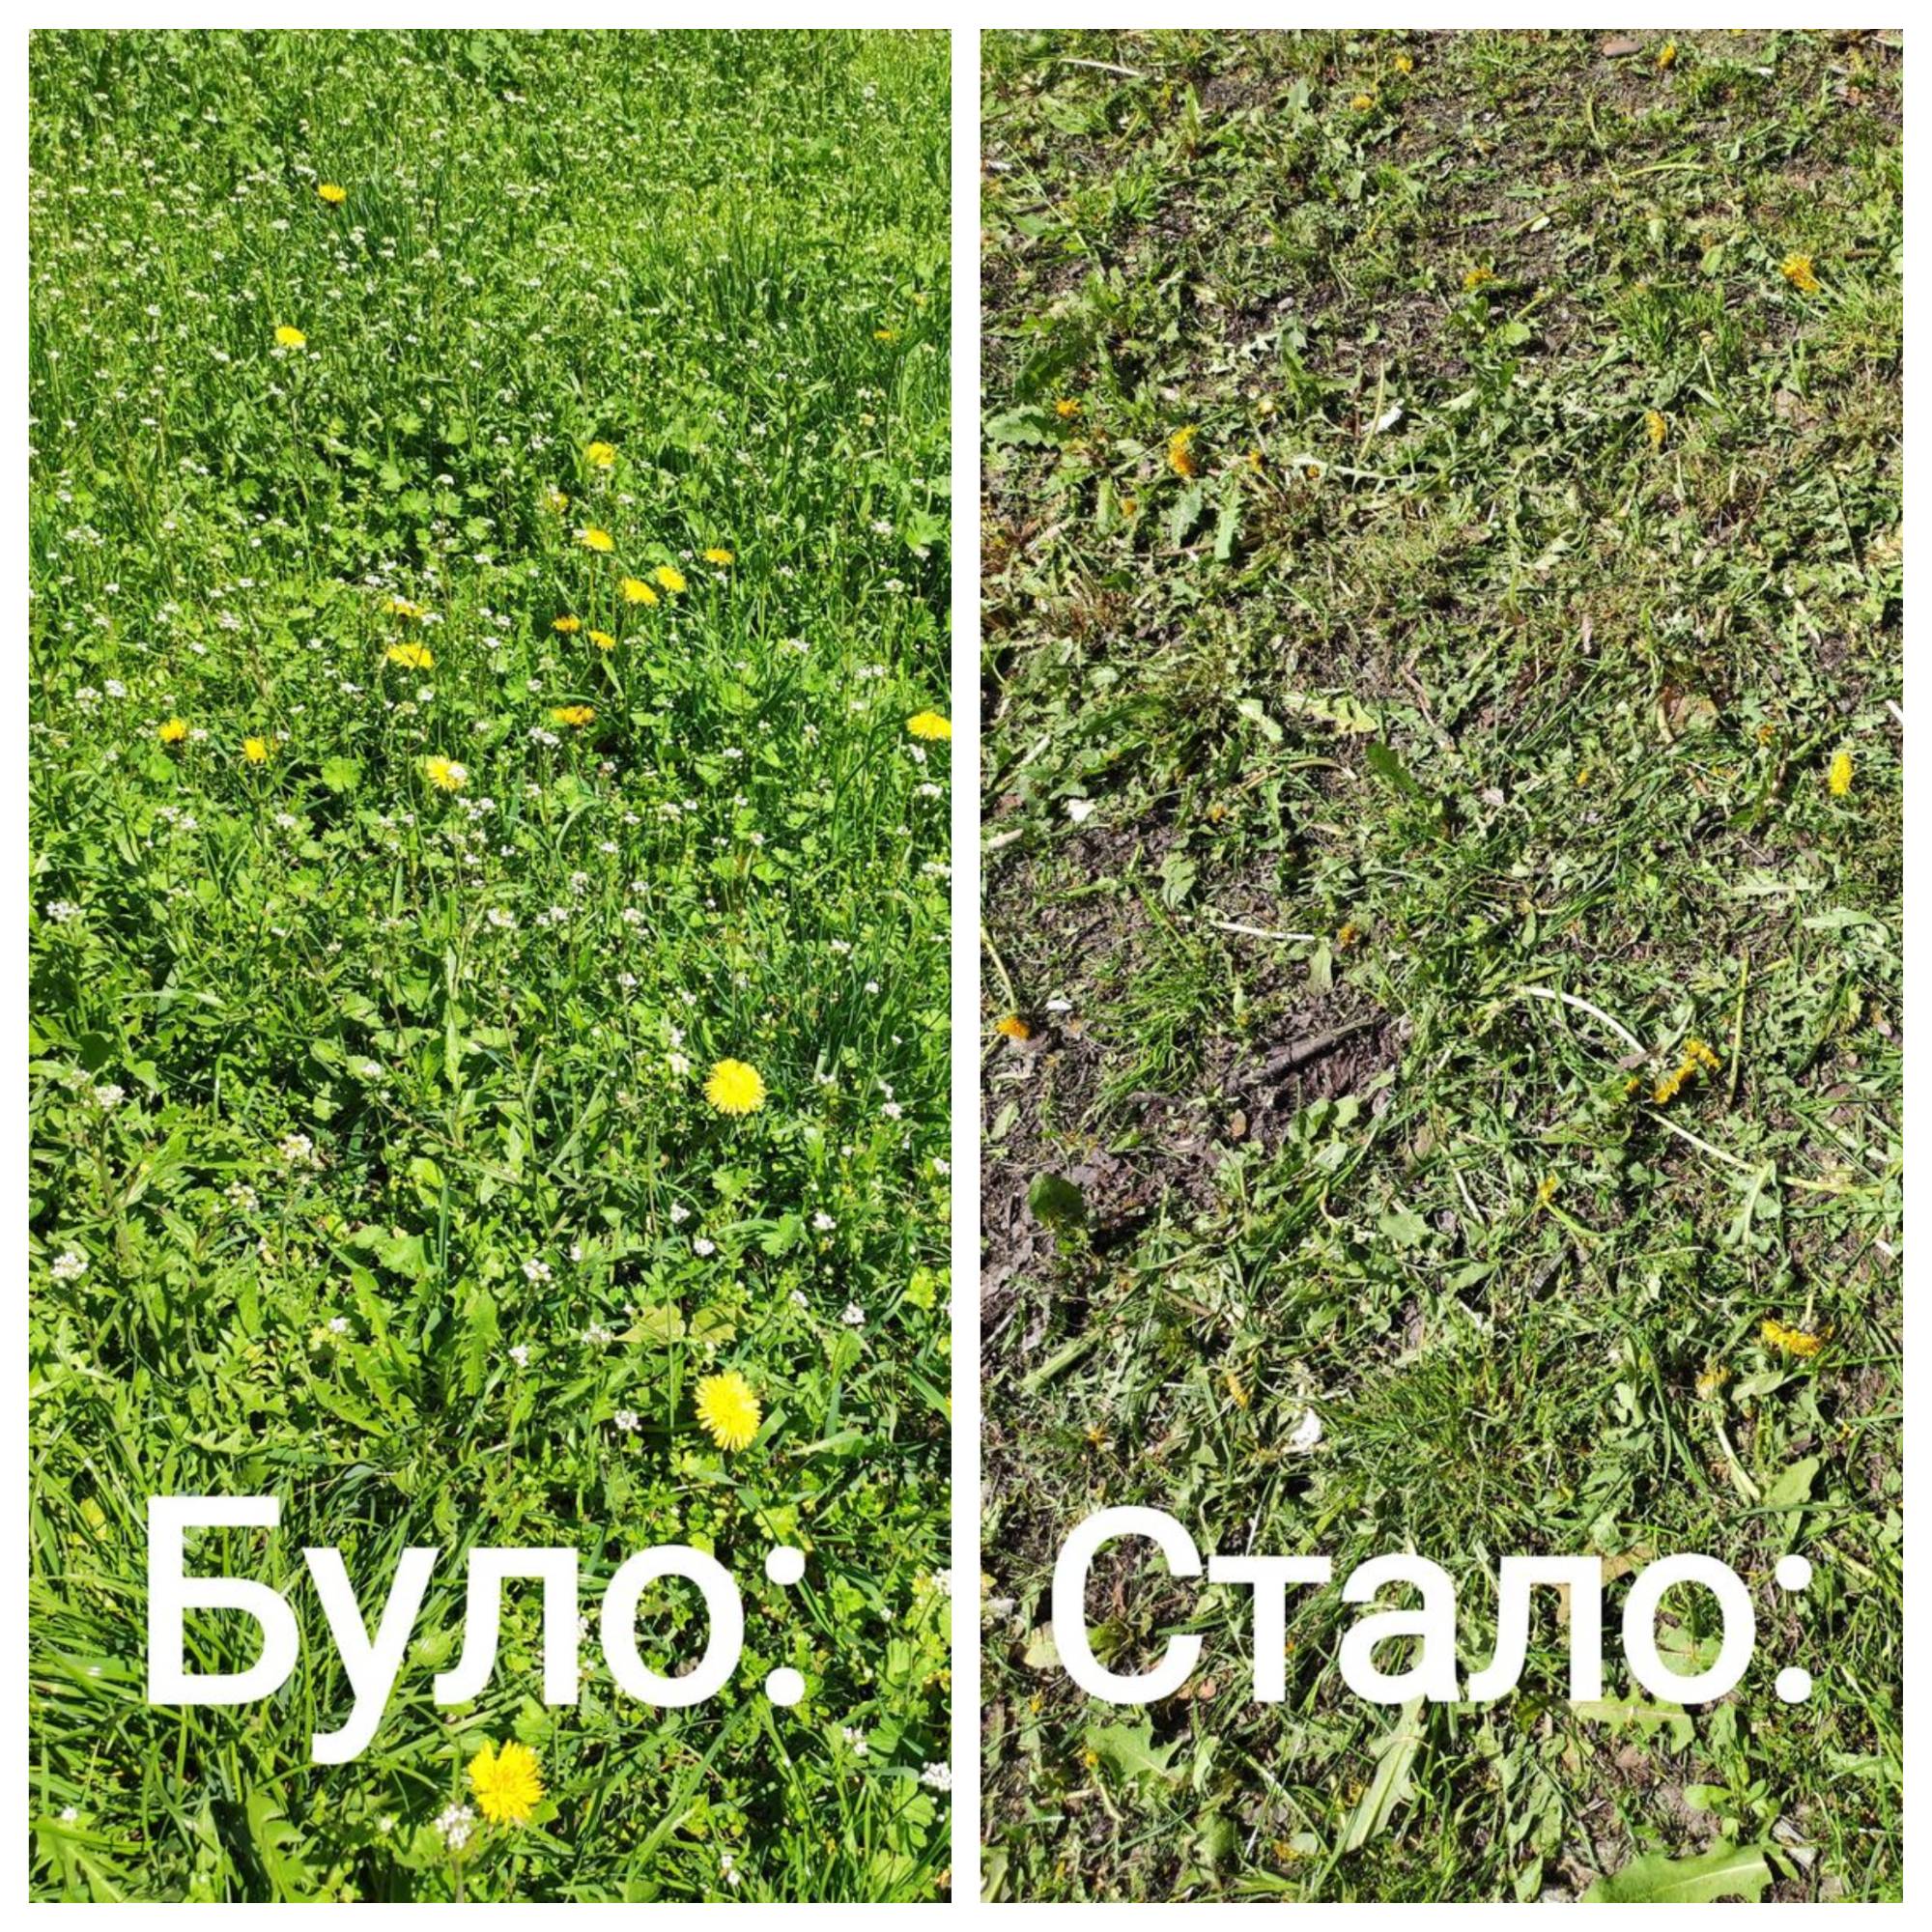 У Києві півтора місяця не косили траву у кількох районах. Пояснюємо плюси такого рішення